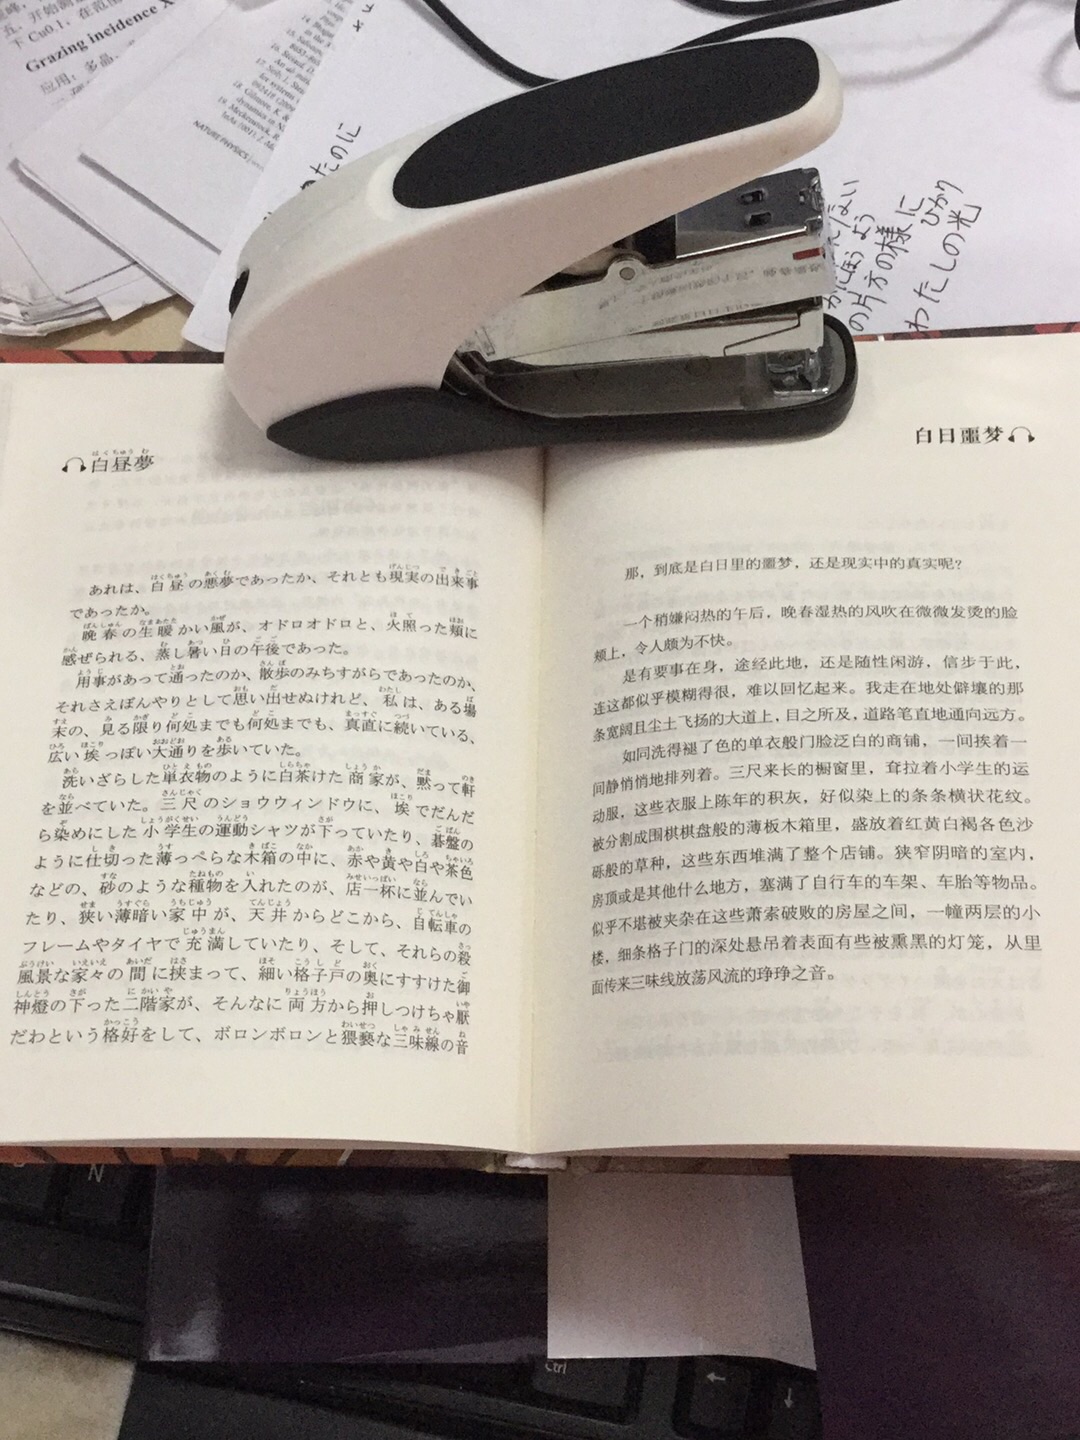 中日双语的书，可以对照翻译学习日语，也能纯粹的当小说看